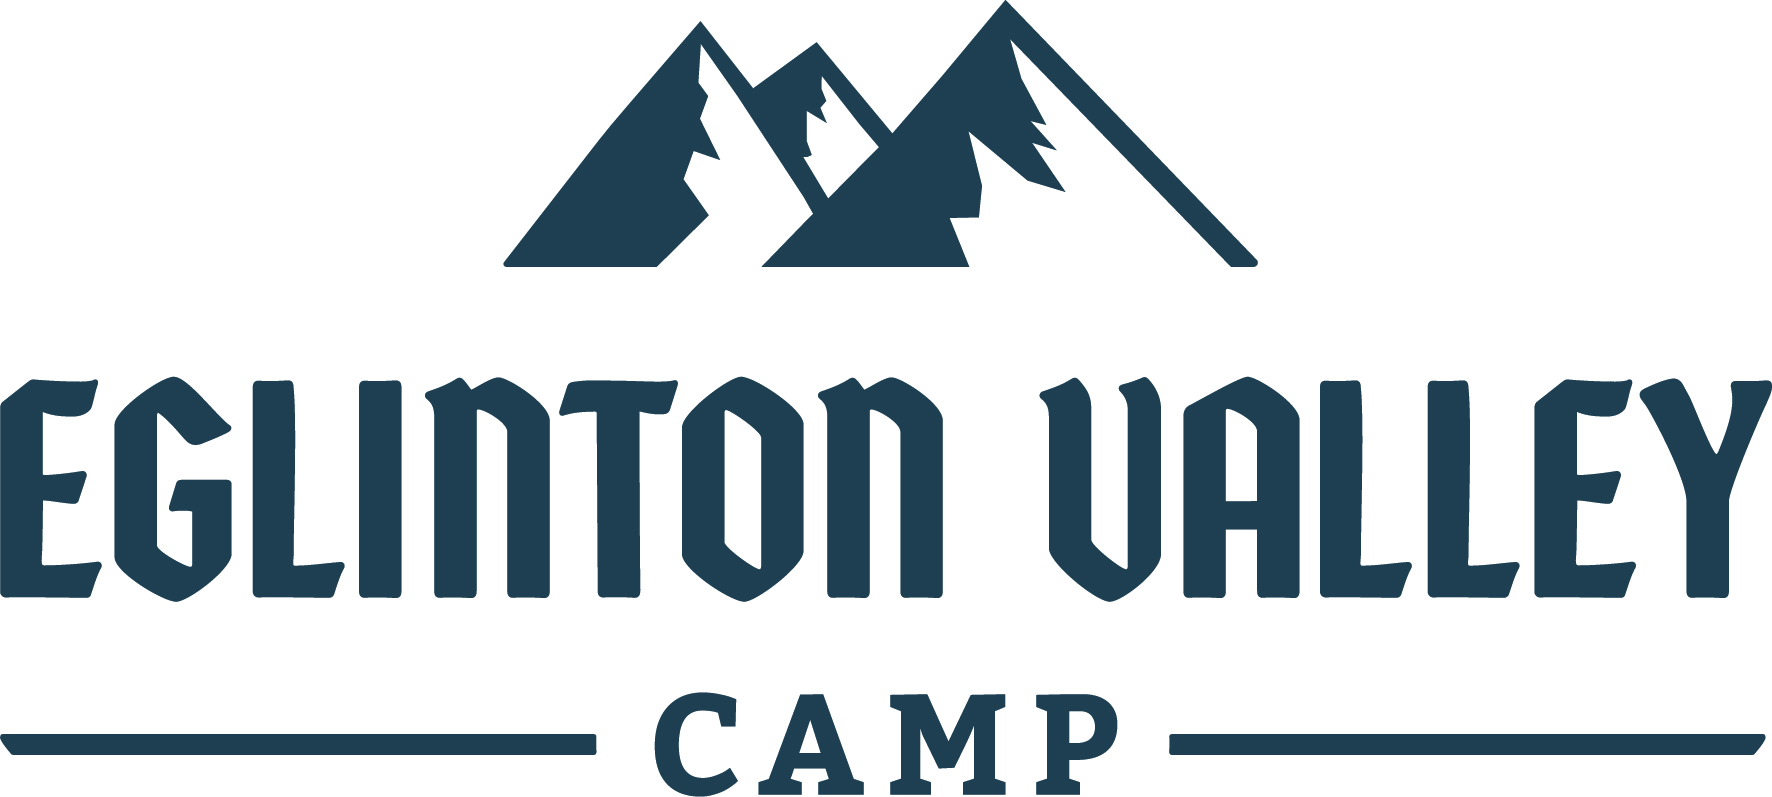 Eglinton Valley Camp 2021 logo primary CMYK